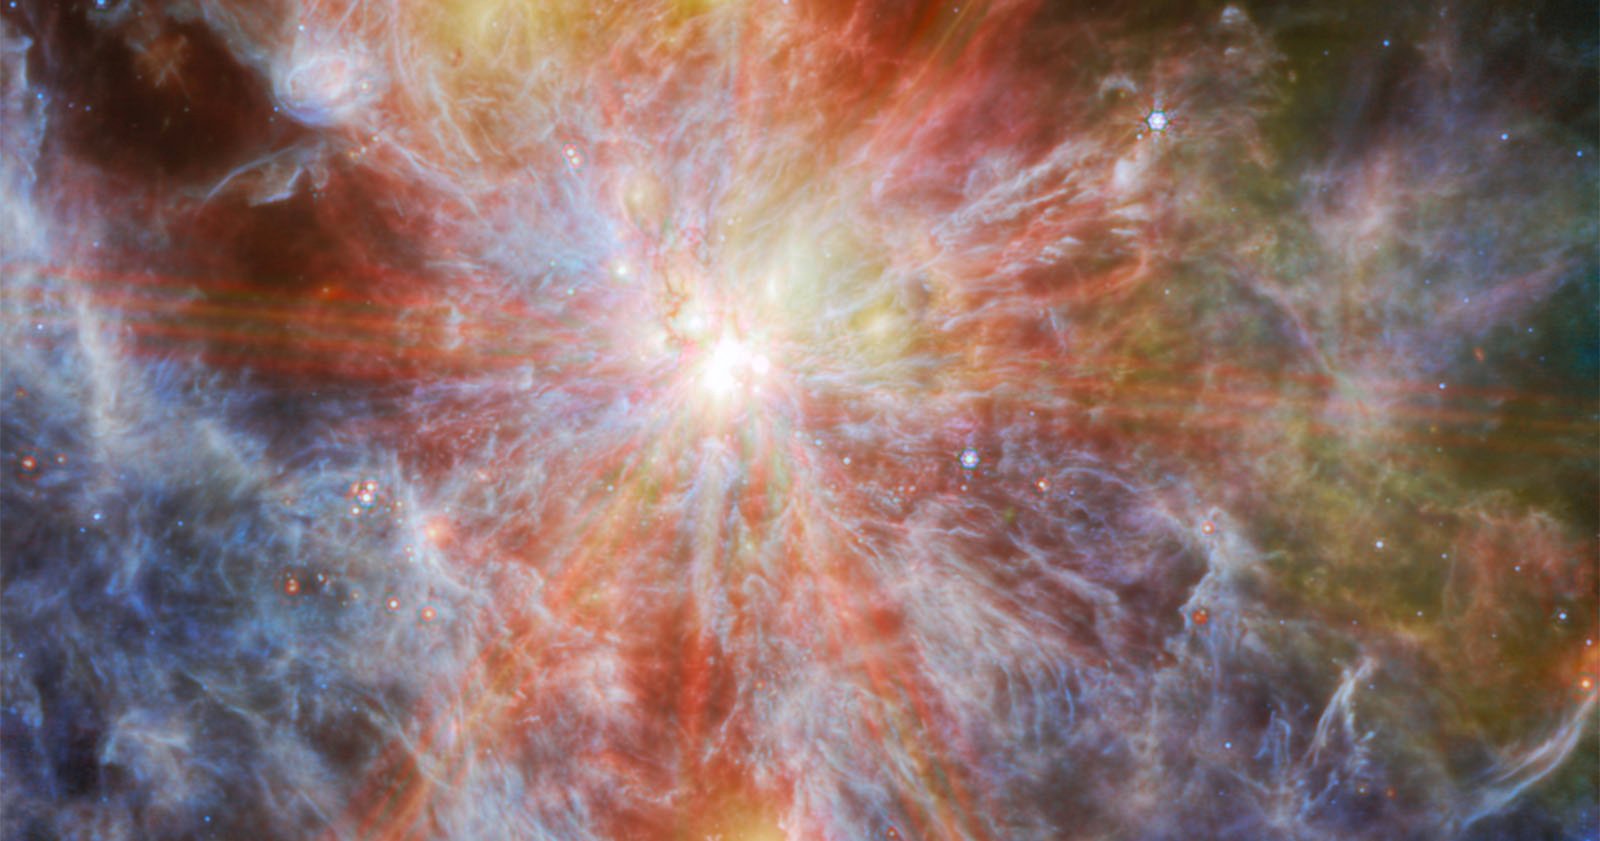  webb newest nebula image looks like colorful painting 